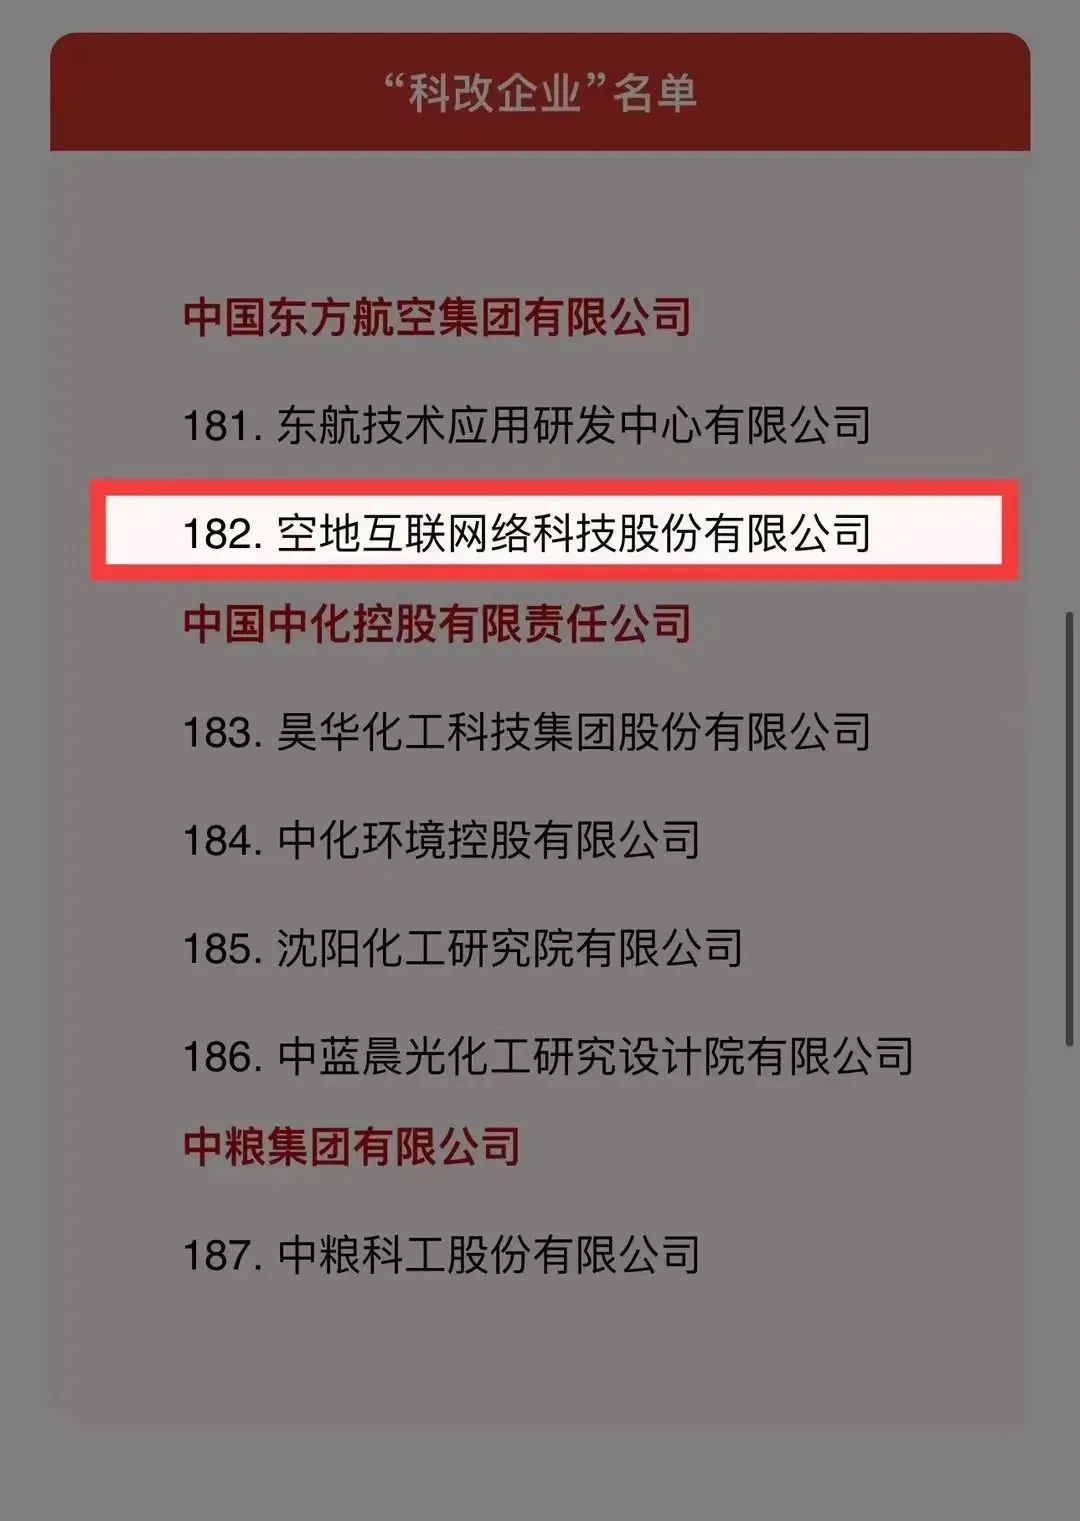 长宁企业空地互联上榜国务院国资委“科改企业”名单